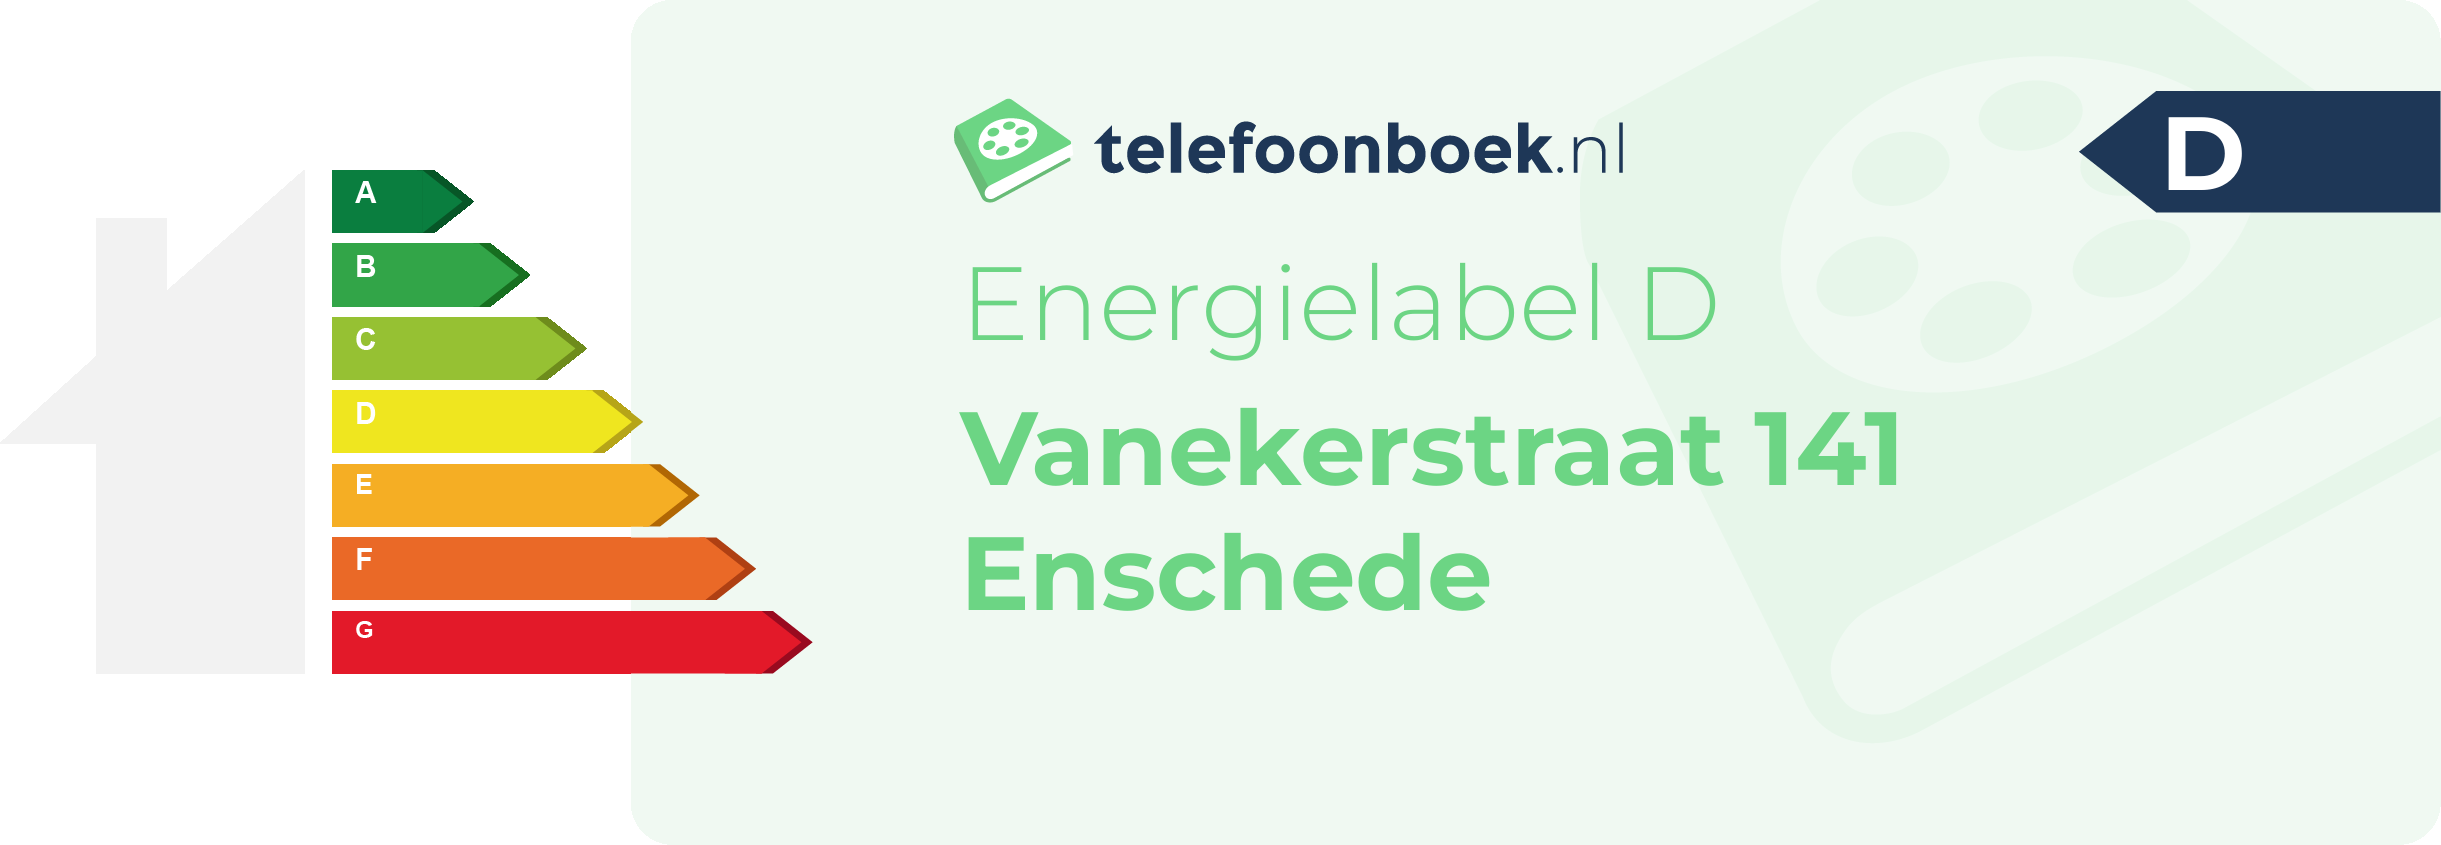 Energielabel Vanekerstraat 141 Enschede